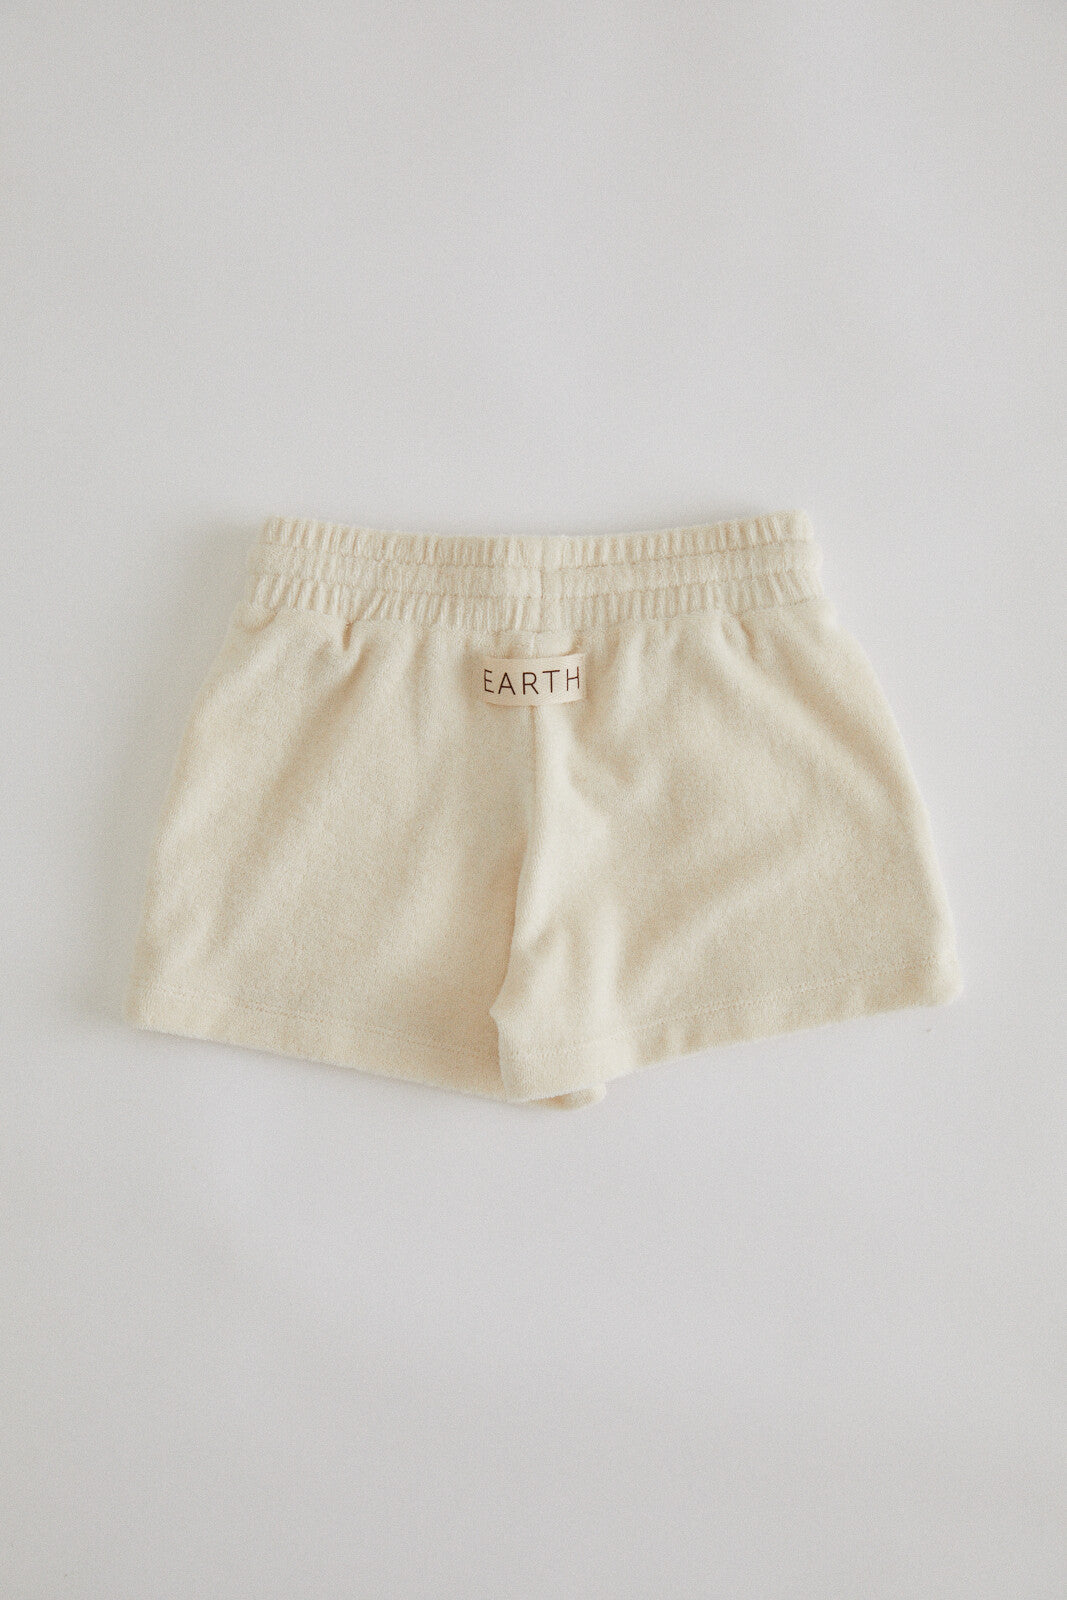 Pocket shorts / Ecru